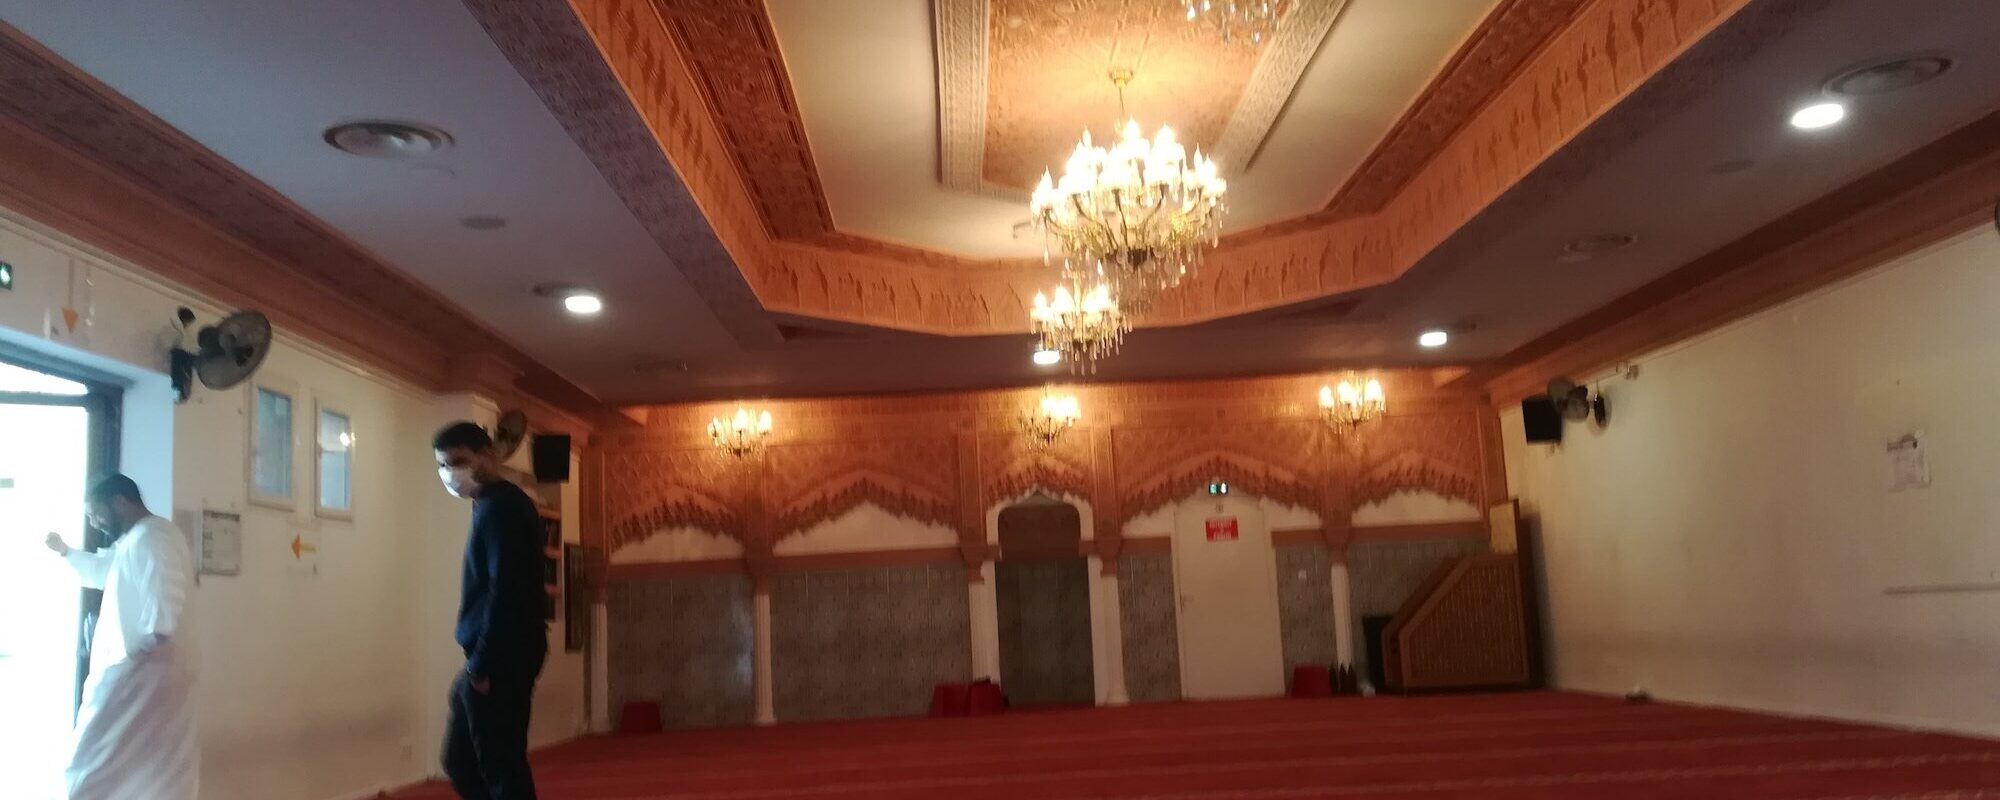 Accusée de prêcher un islam « radical », une mosquée de Pessac fermée par la préfecture